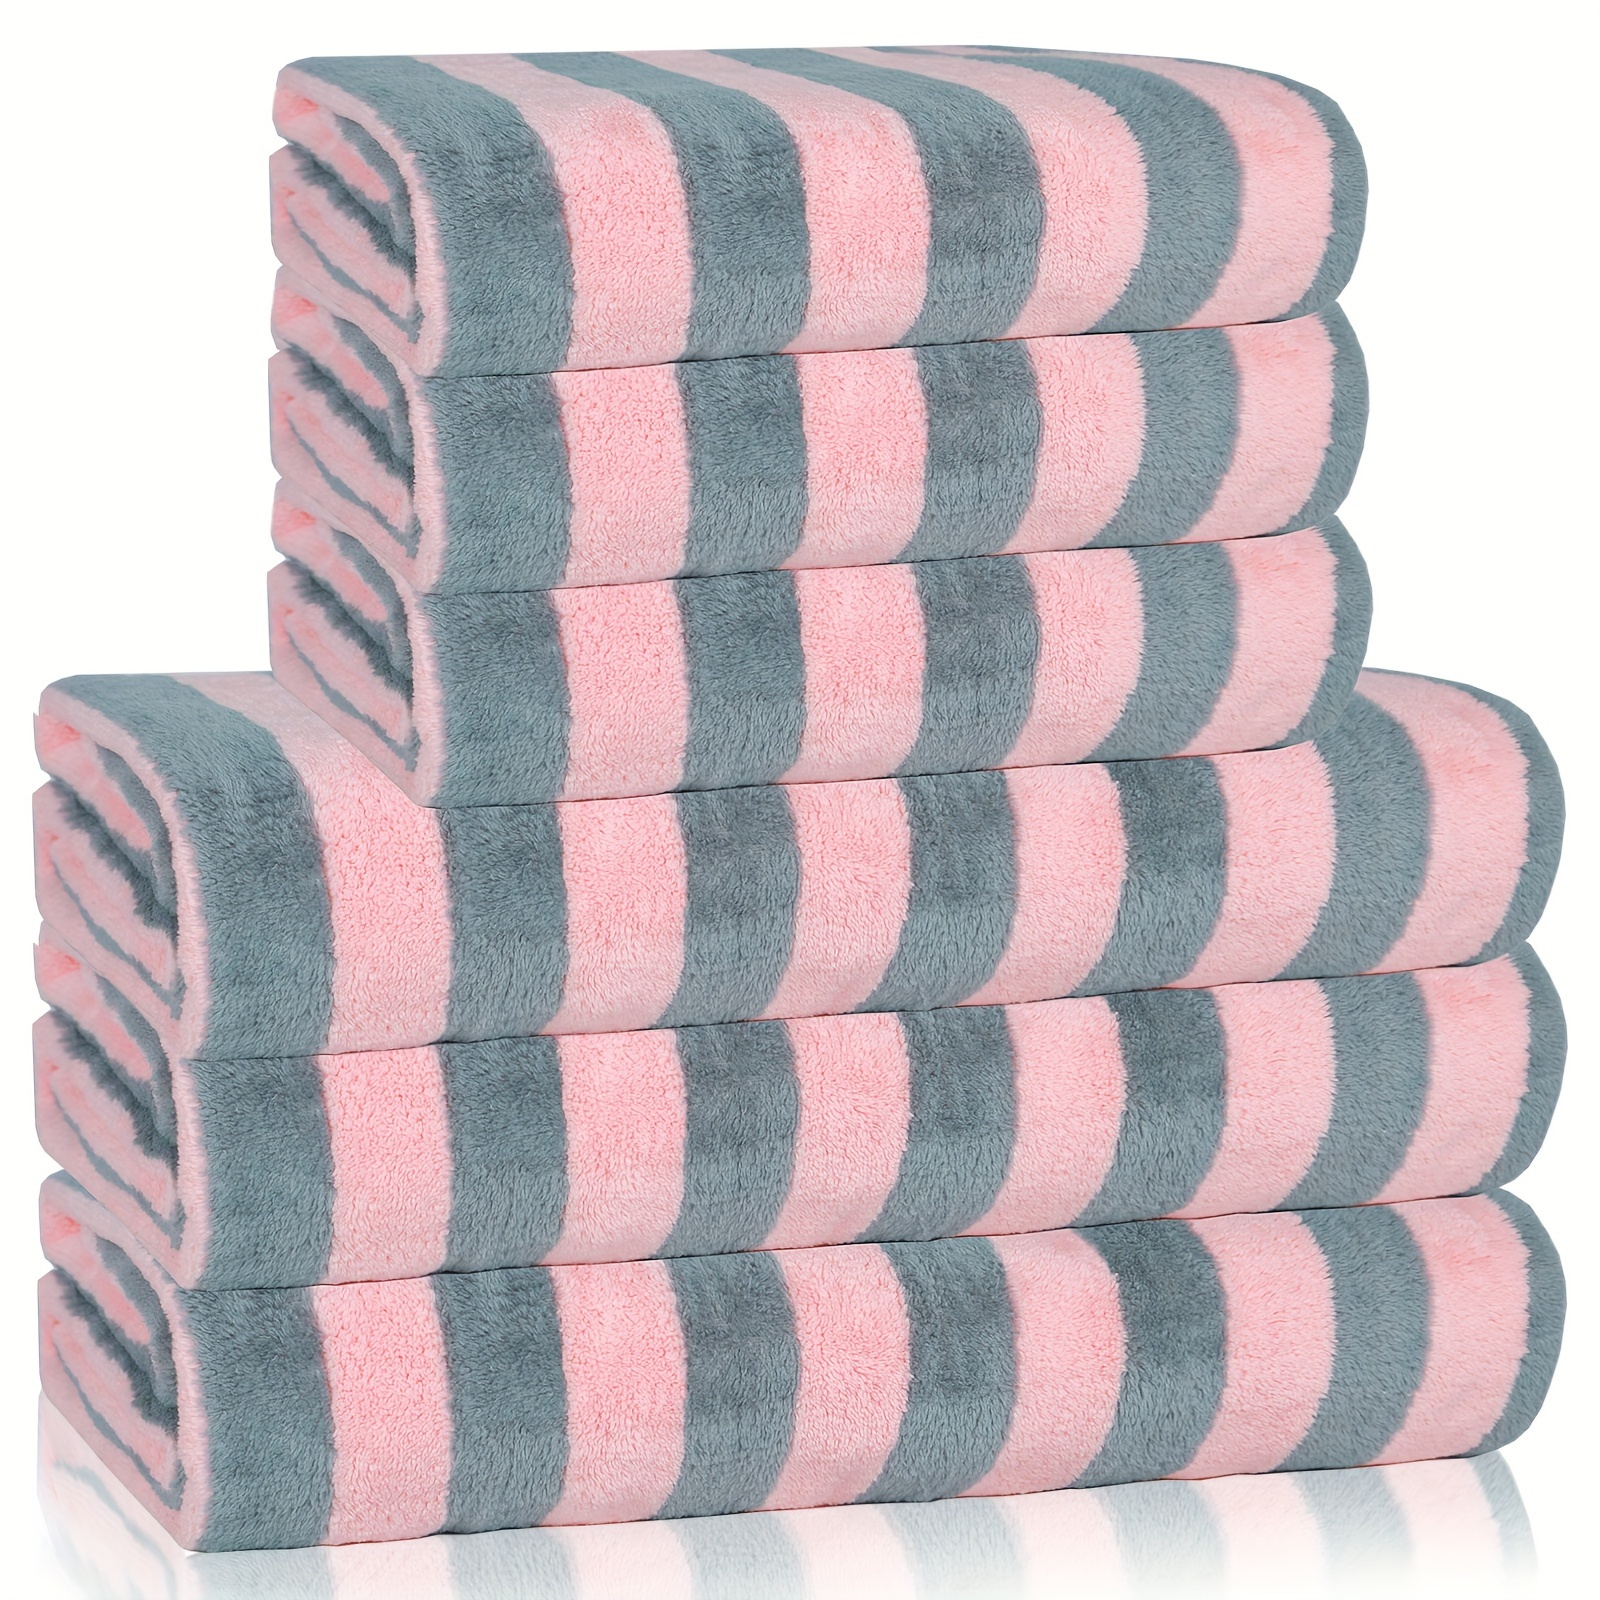 6pcs striped microfiber towel set soft hand towel bath towel bath linen sets super absorbent towels for bathroom bath towel 28in 55in hand towel 14in 30in bathroom supplies